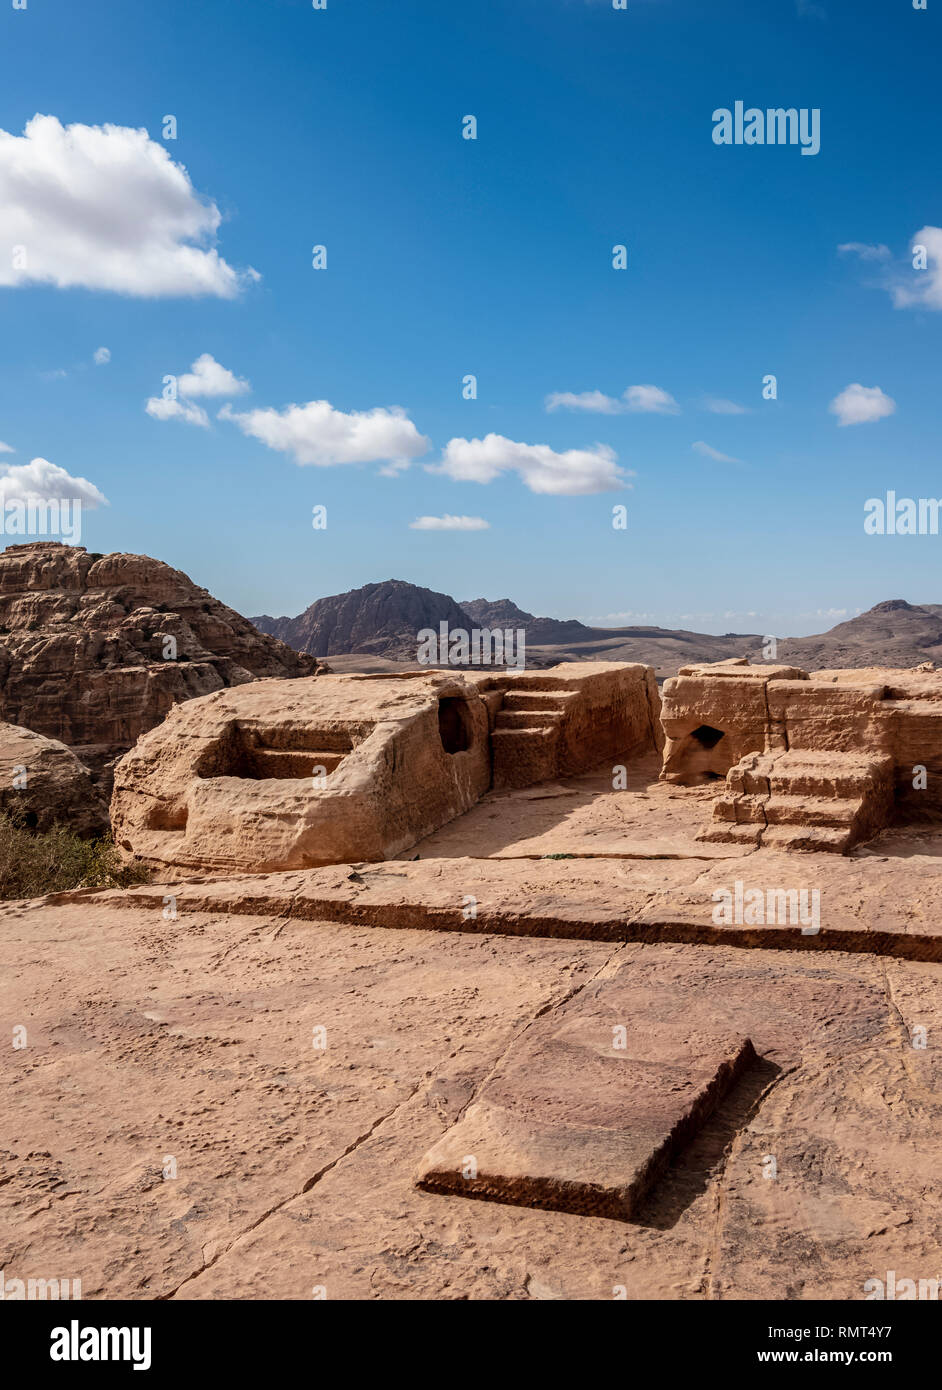 High Place of Sacrifice, Petra, Ma'an Governorate, Jordan Stock Photo